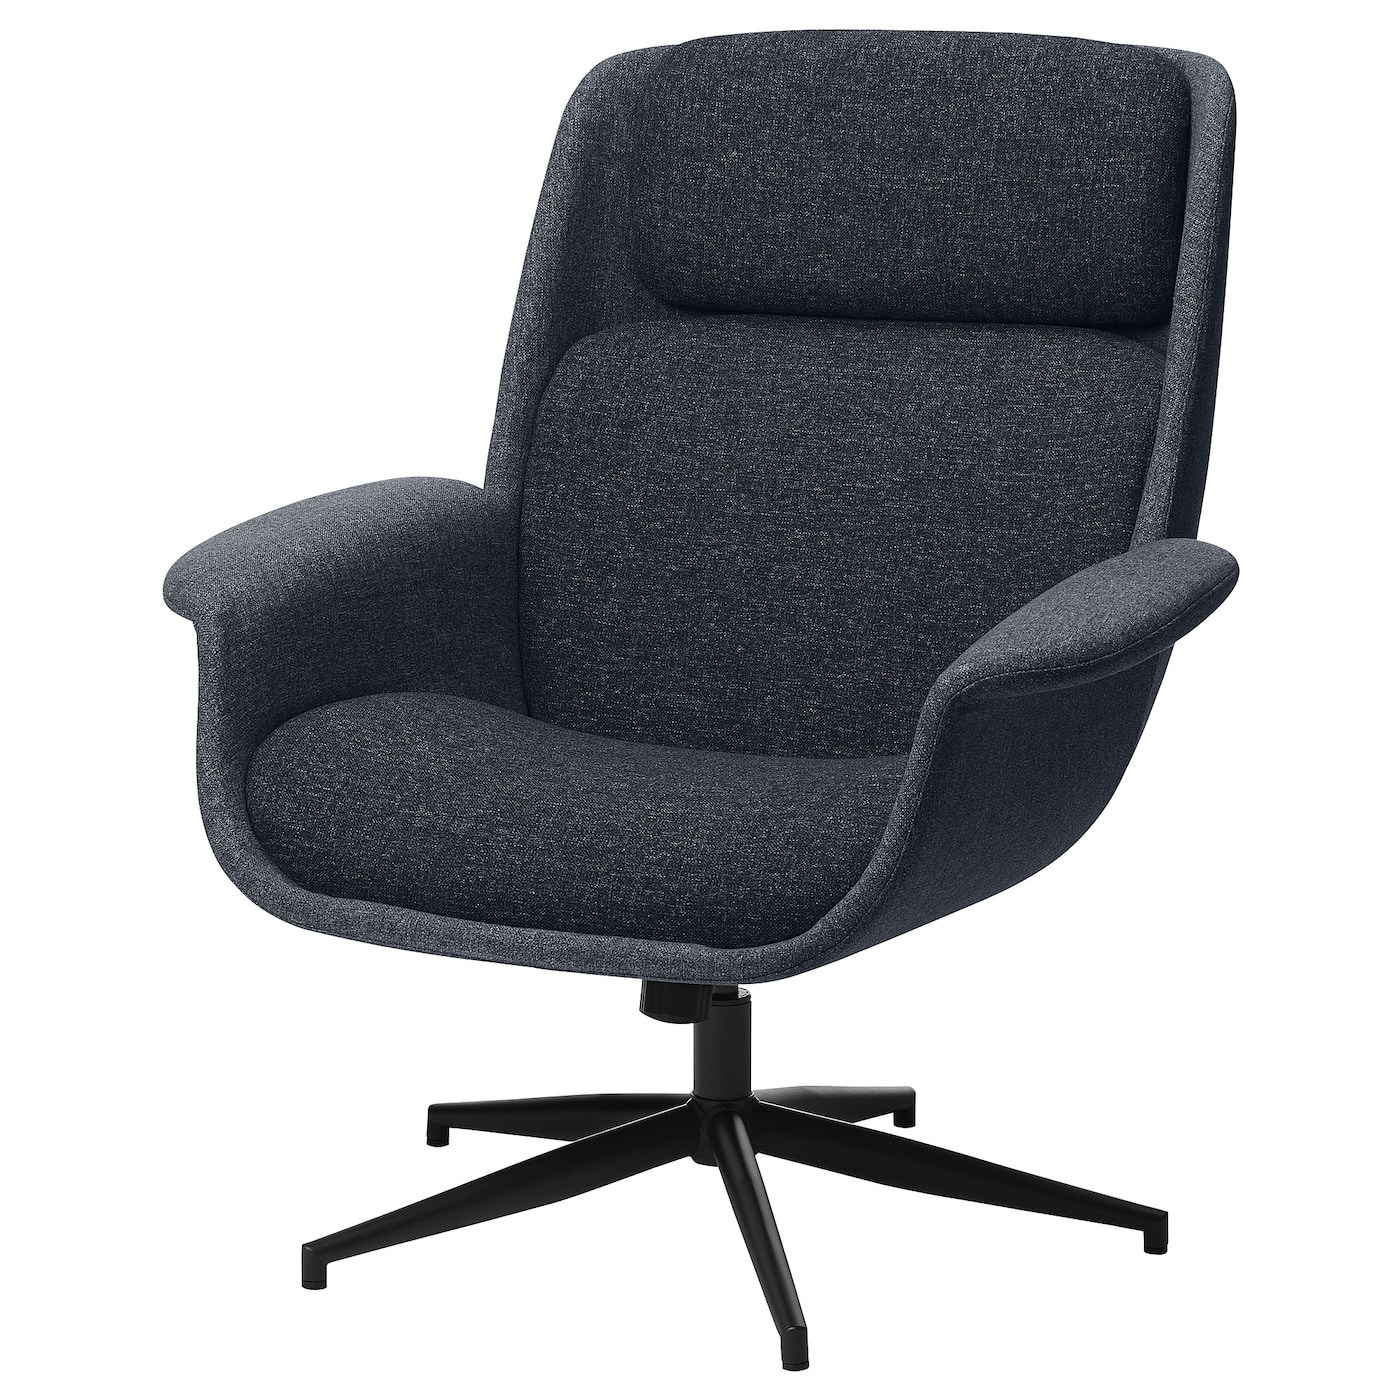 ЭЛЕБИ Вращающееся кресло, Гуннаред средний серый/темно-серый ÄLEBY IKEA офисное кресло эргономичное компьютерное кресло с низкой спинкой регулируемое вращающееся офисное кресло с поддержкой поясницы